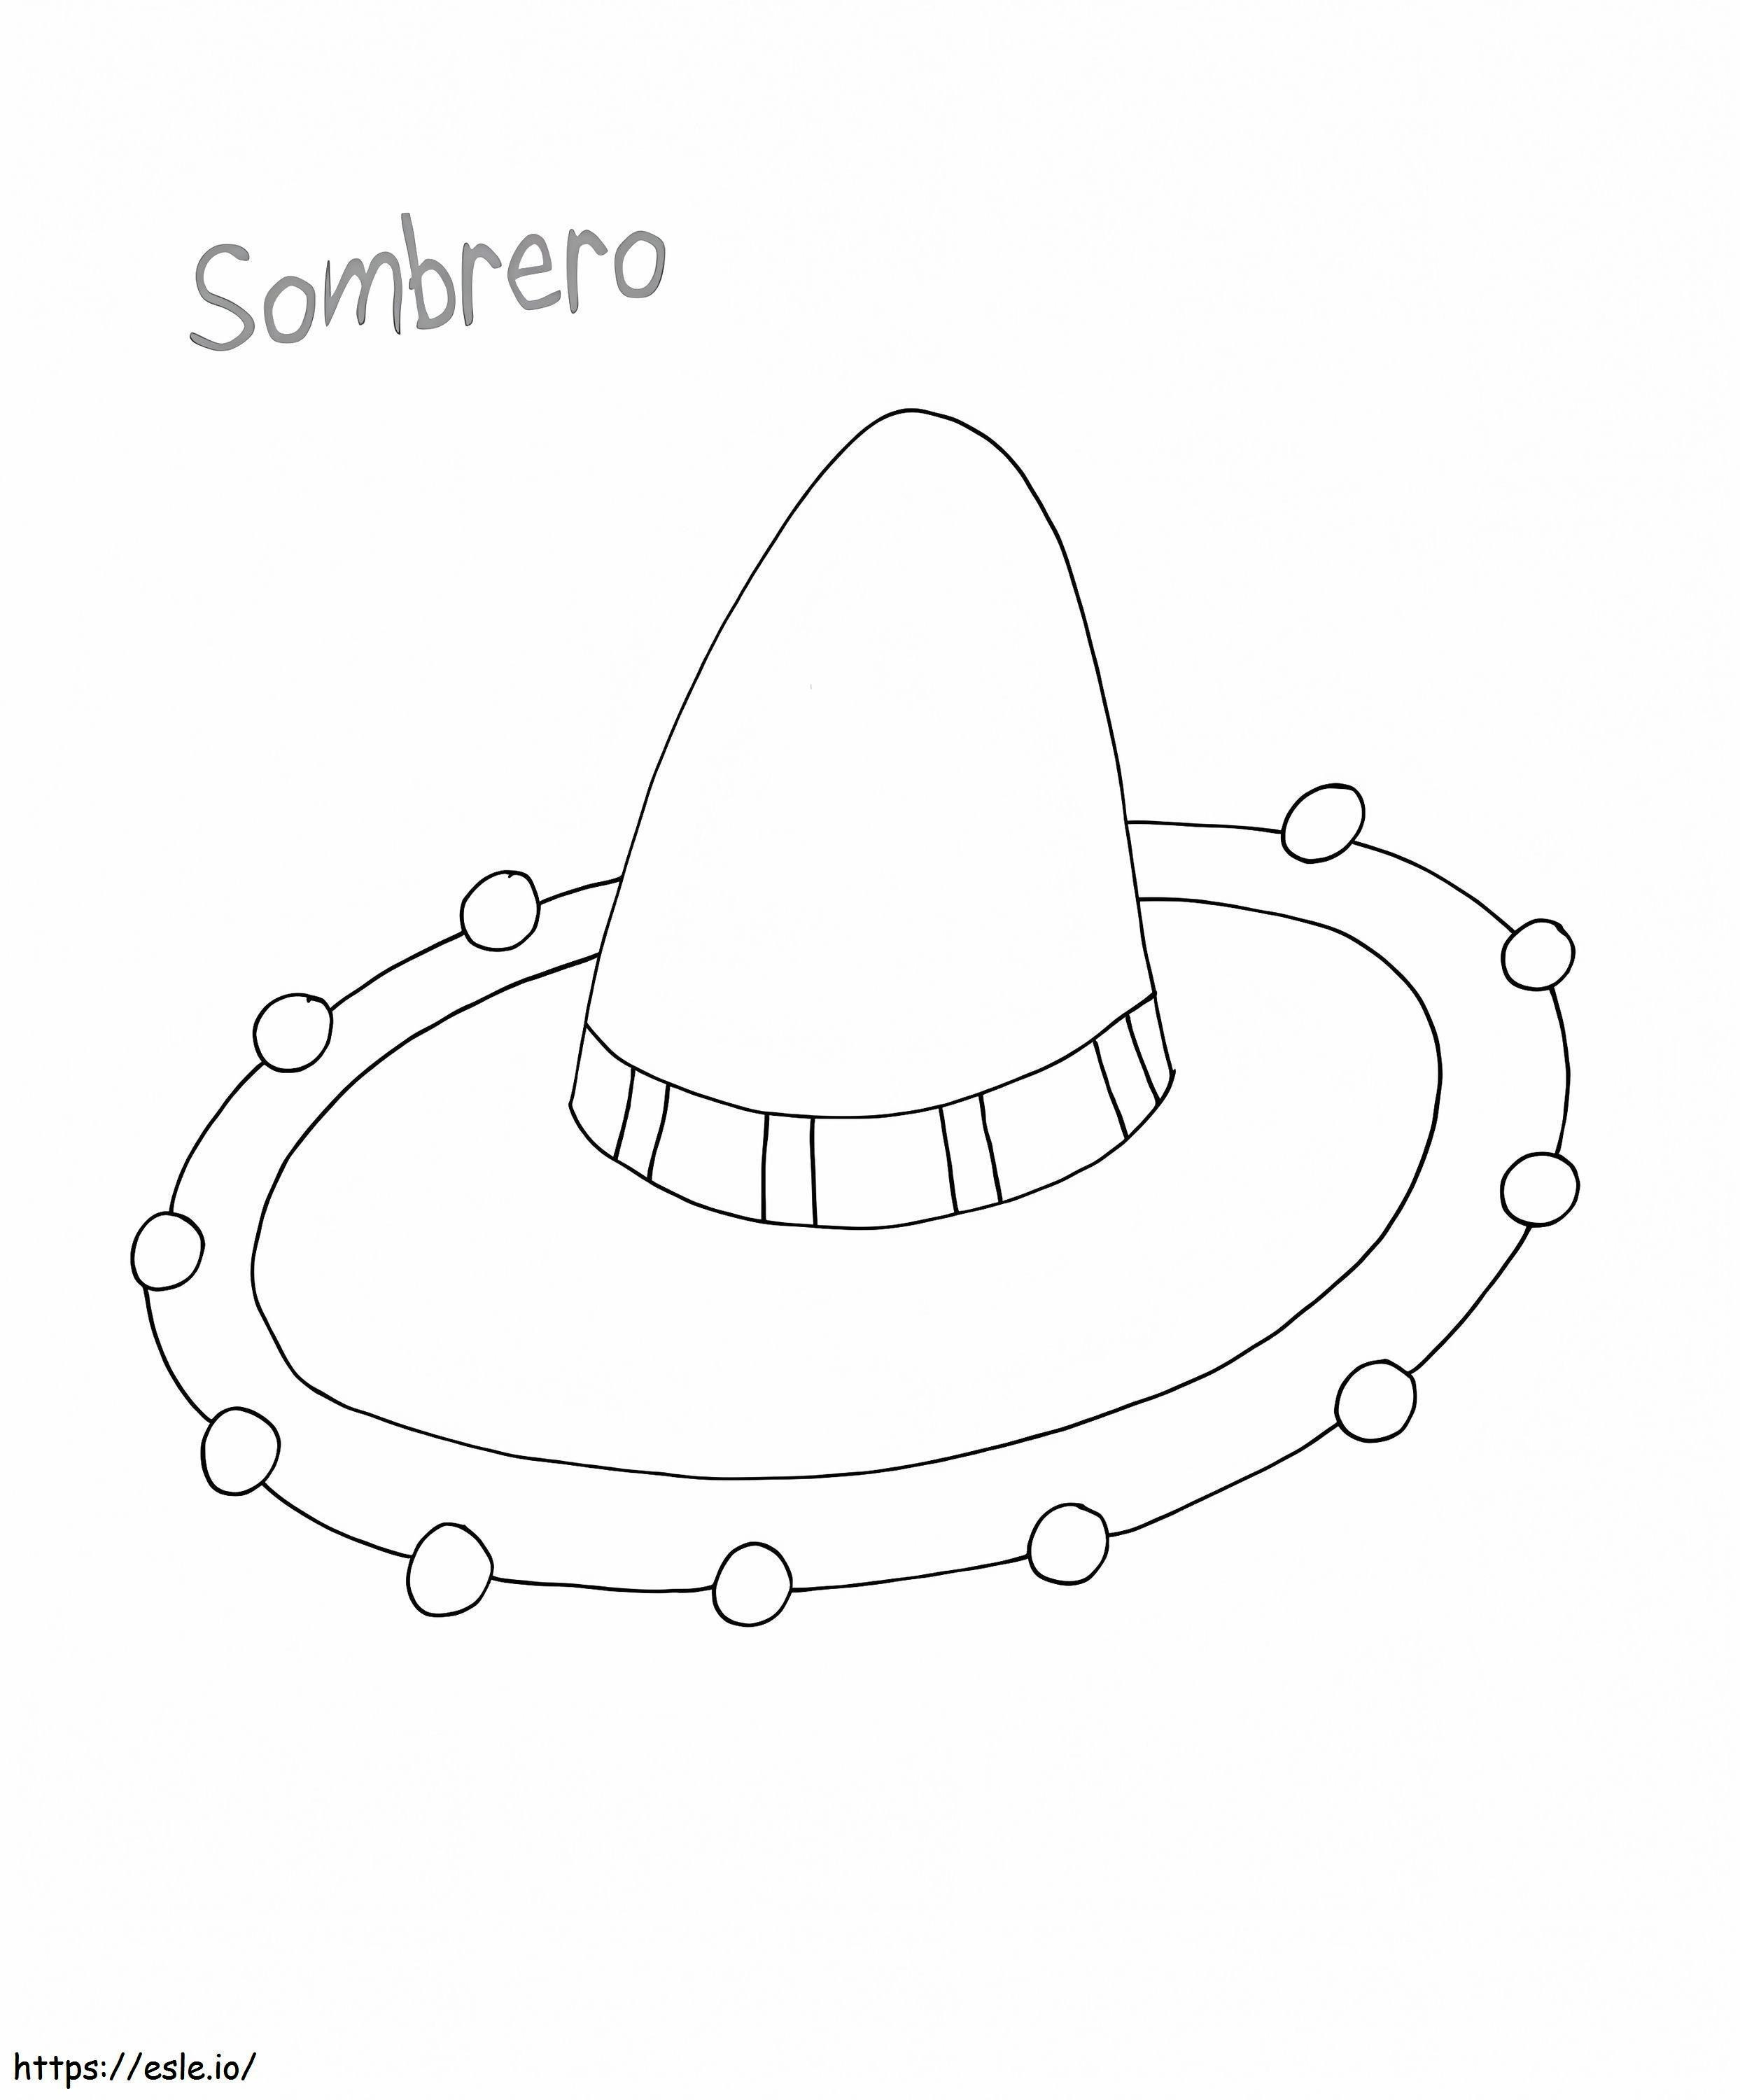 Chapéu Sombrero Mexicano para colorir